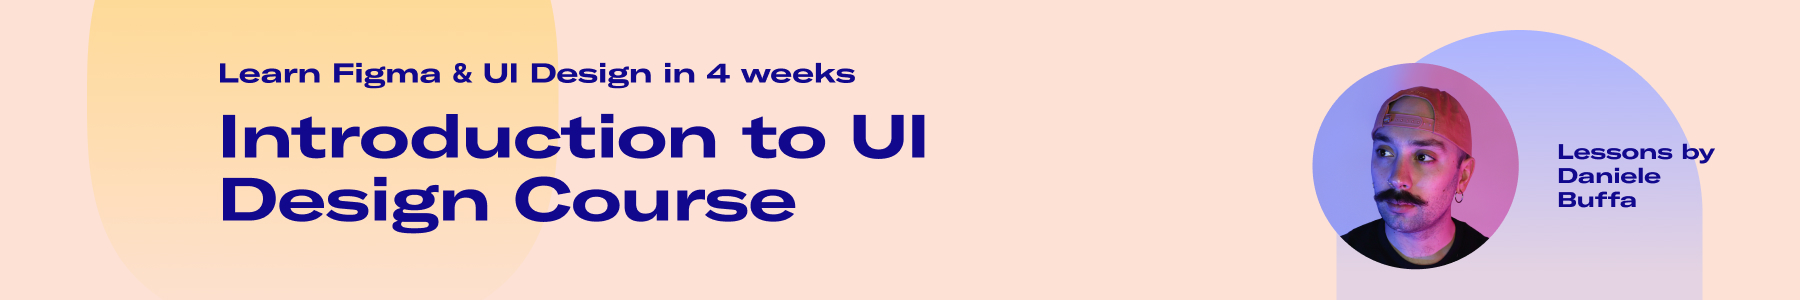 Intro to UI Design Course